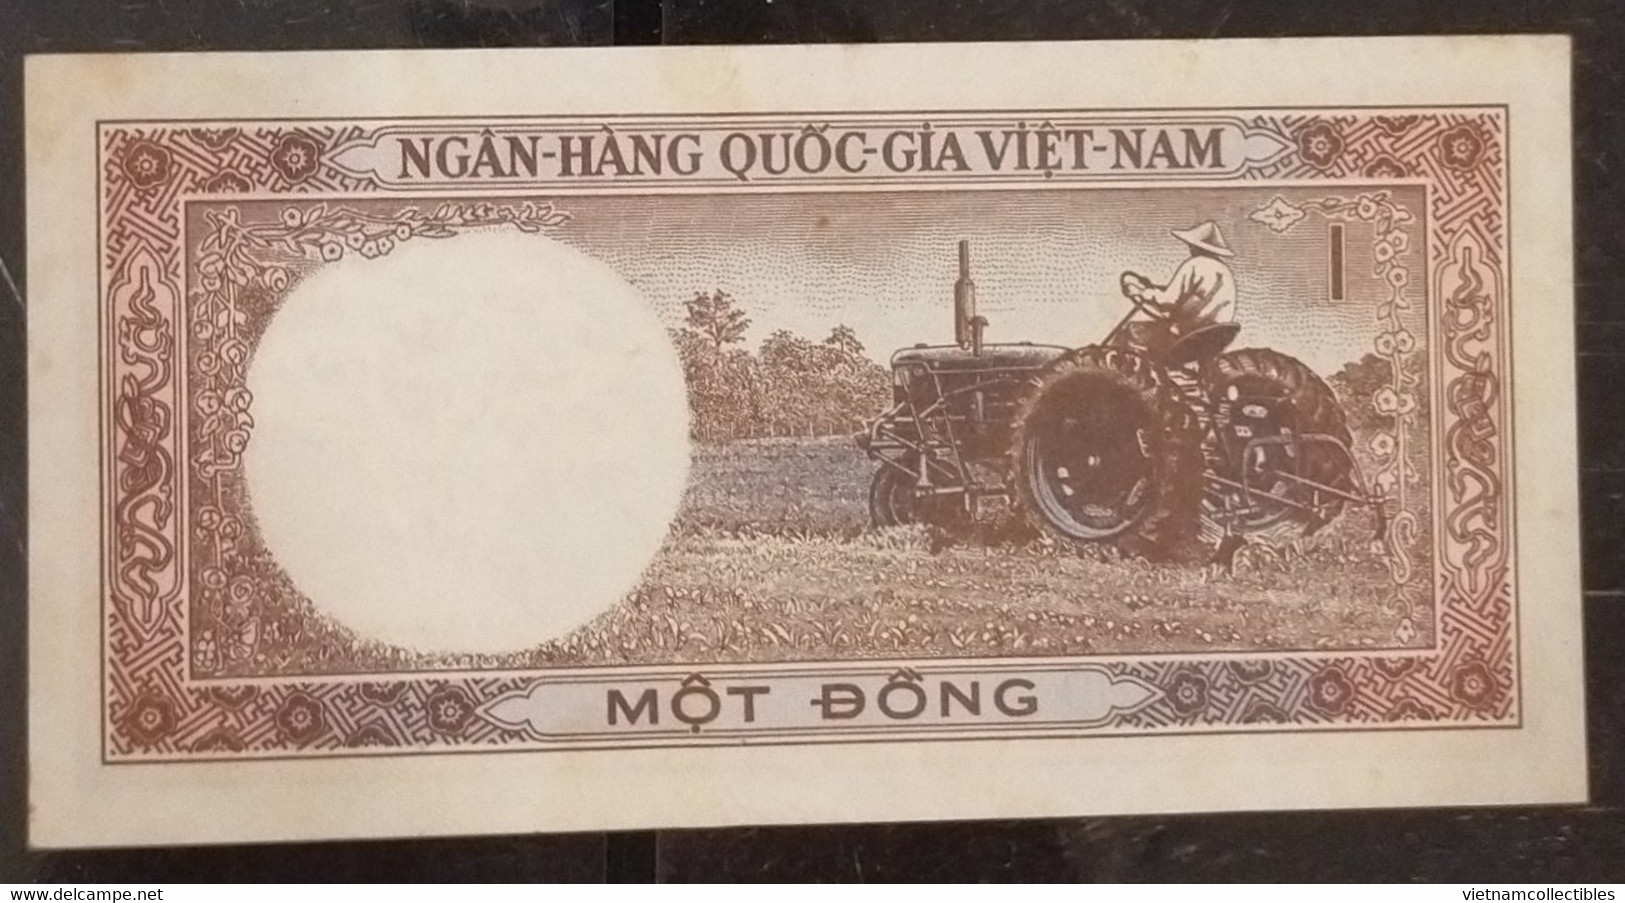 South Viet Nam Vietnam 1 Dông EF Banknote Note 1964 - Pick# 15 / 2 Photo - Vietnam